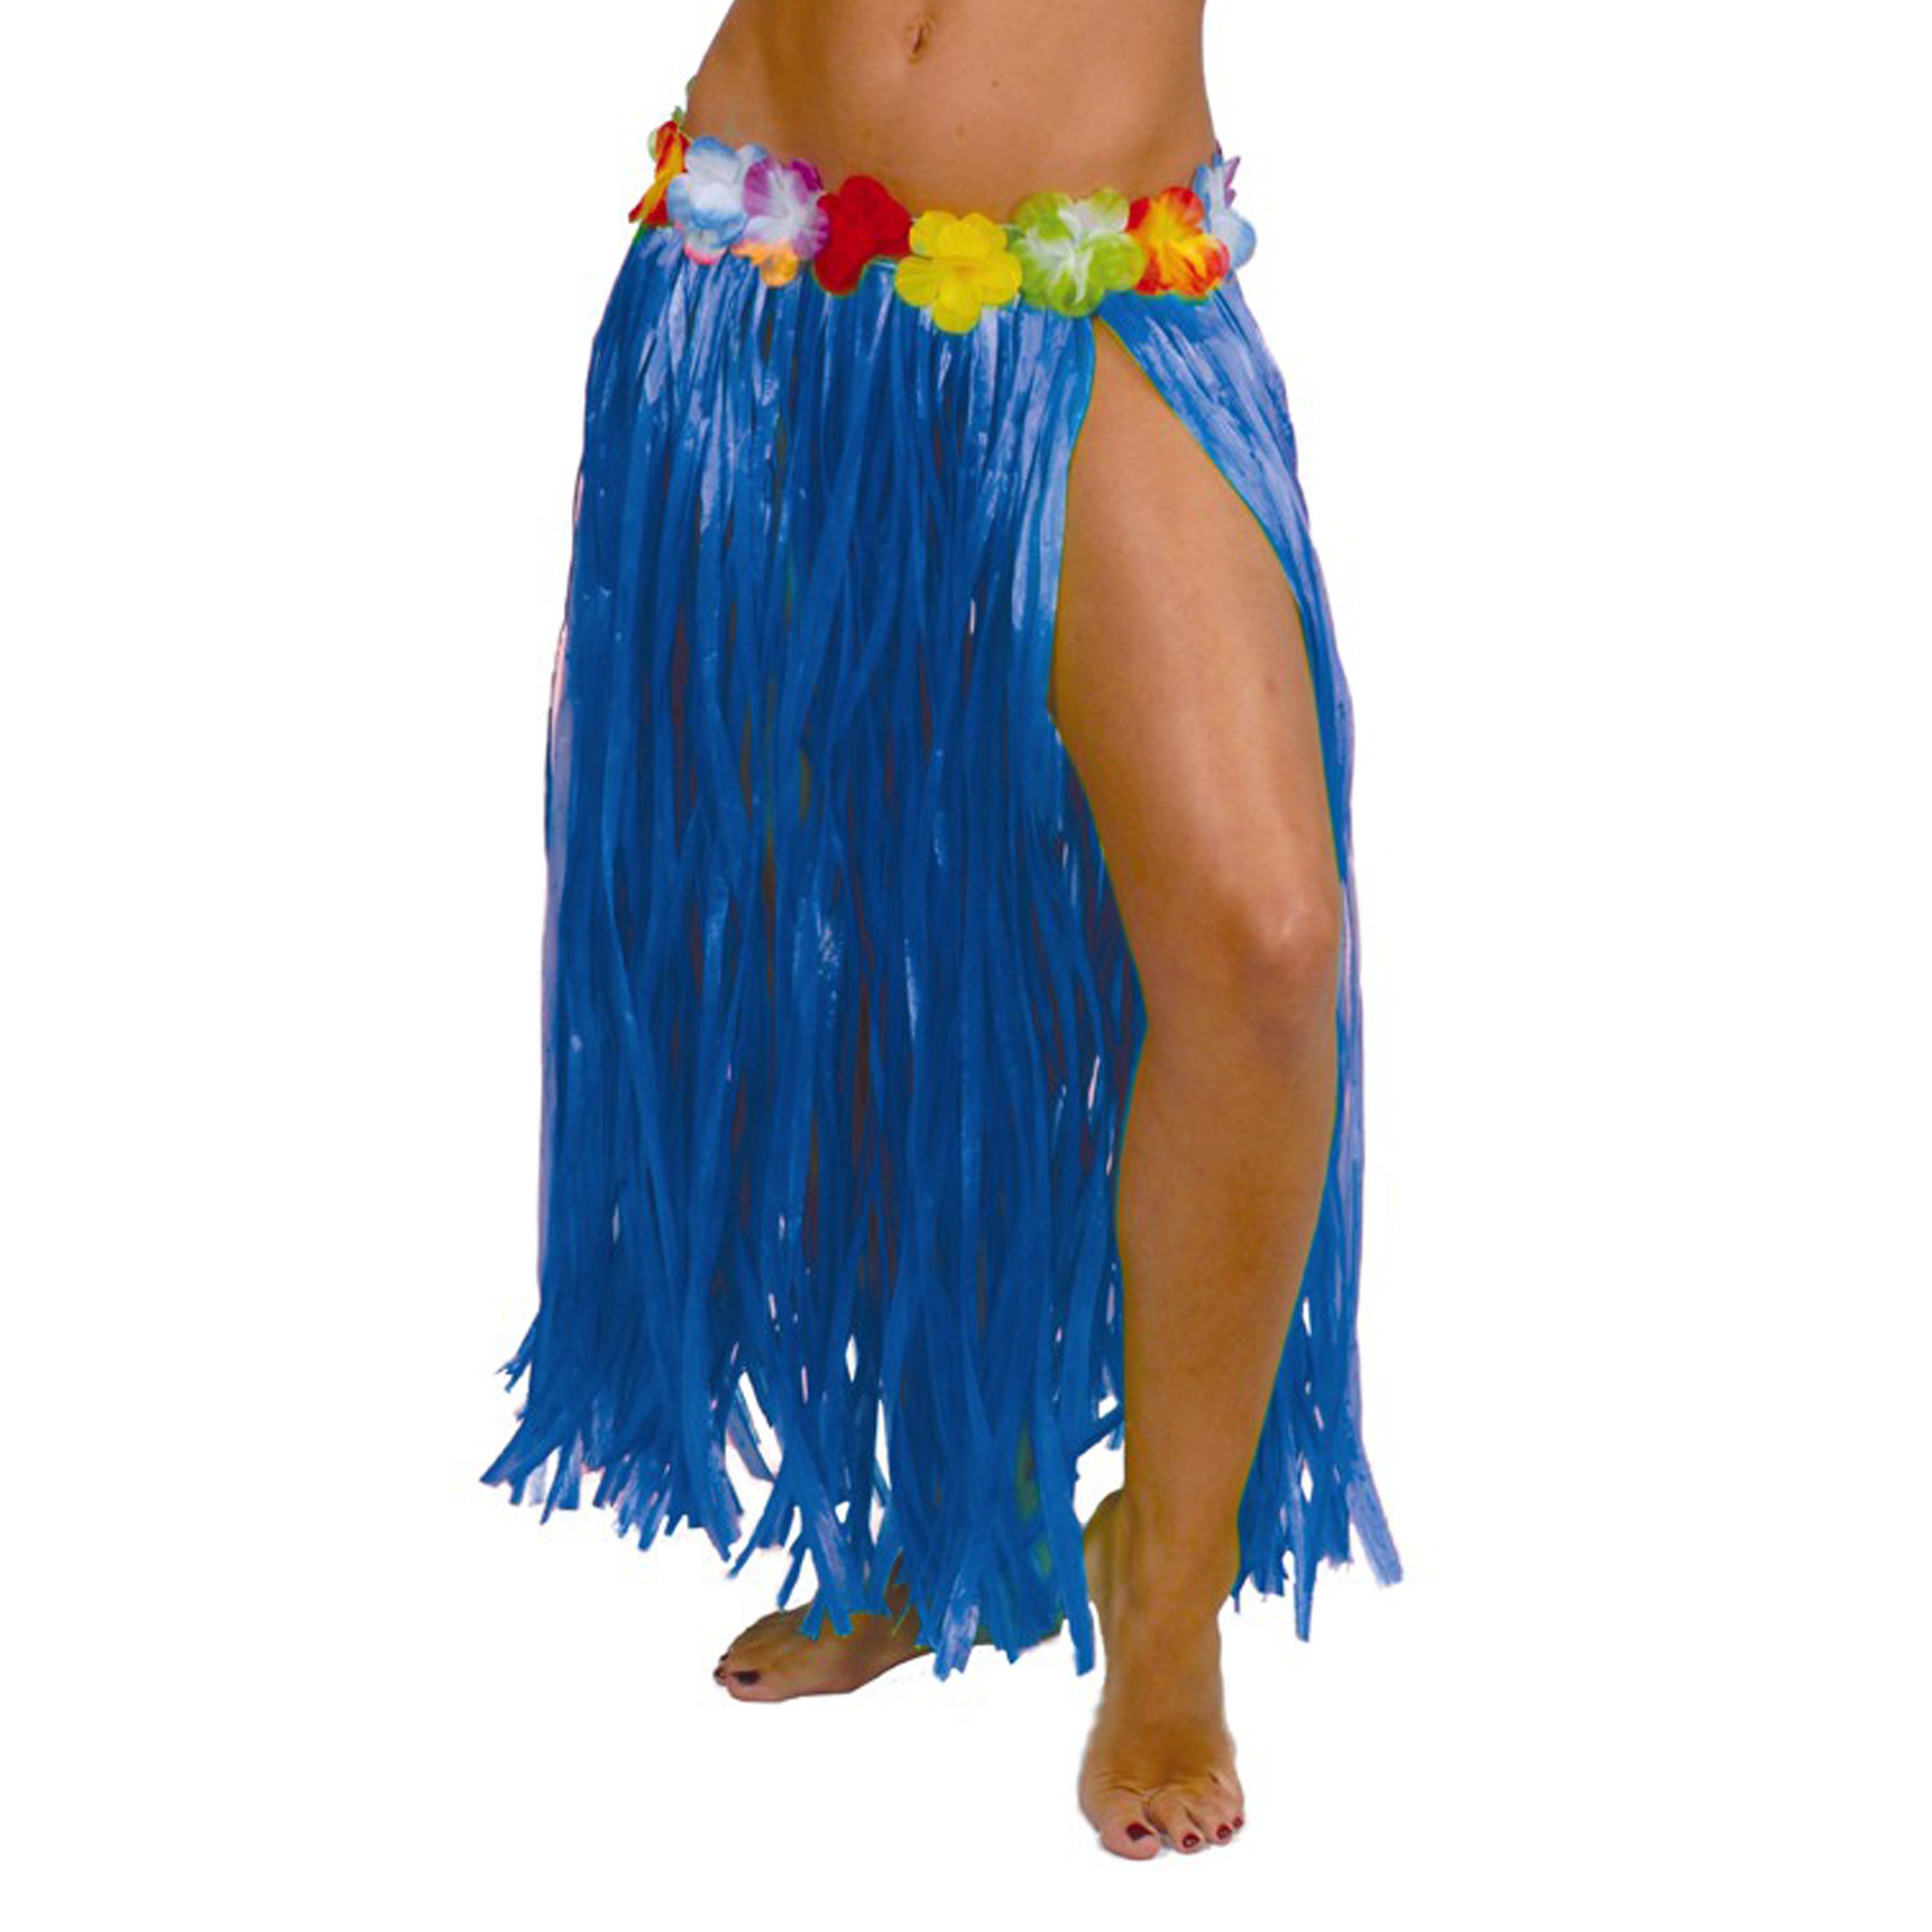 Fiestas Guirca Hawaii verkleed rokje voor volwassenen blauw 75 cm hoela rok tropisch